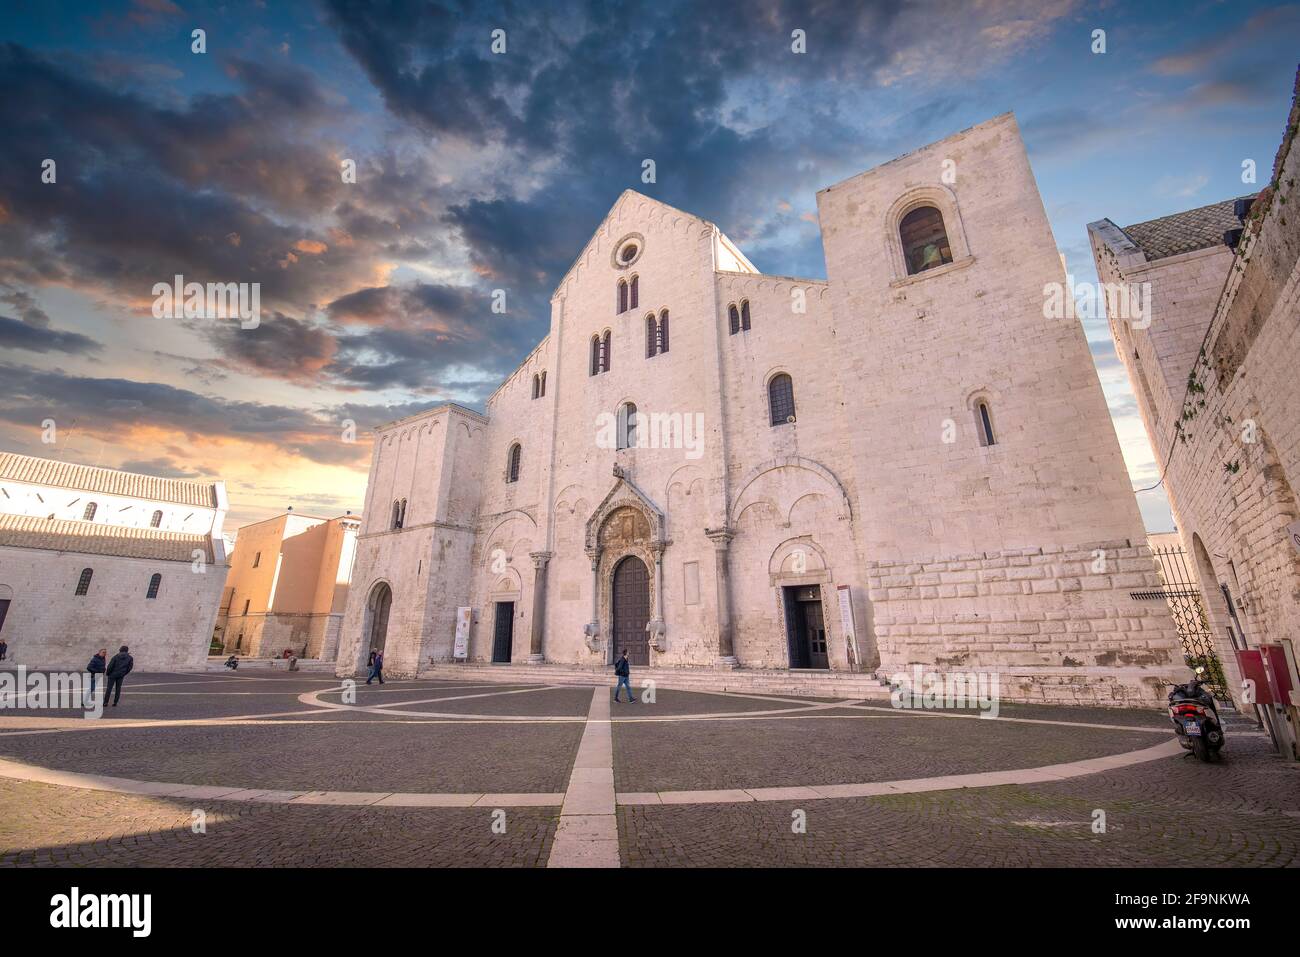 Bari, Apulien, Italien. Die Basilika des Heiligen Nikolaus (San Nicola) bei Sonnenuntergang. Römisch-katholische Kirche in der Region Apulien Stockfoto